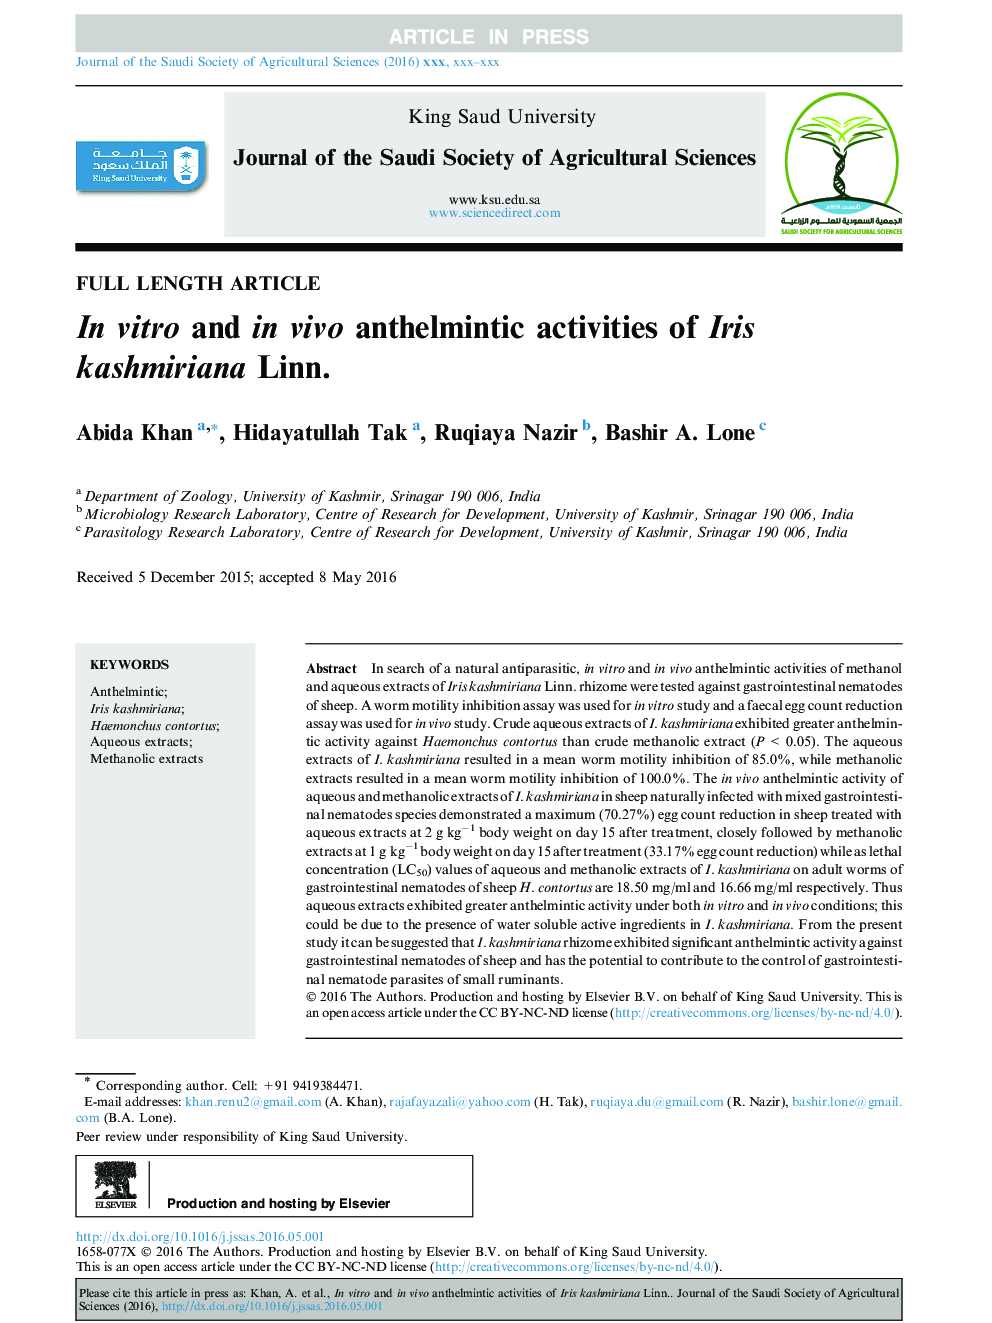 In vitro and in vivo anthelmintic activities of Iris kashmiriana Linn.